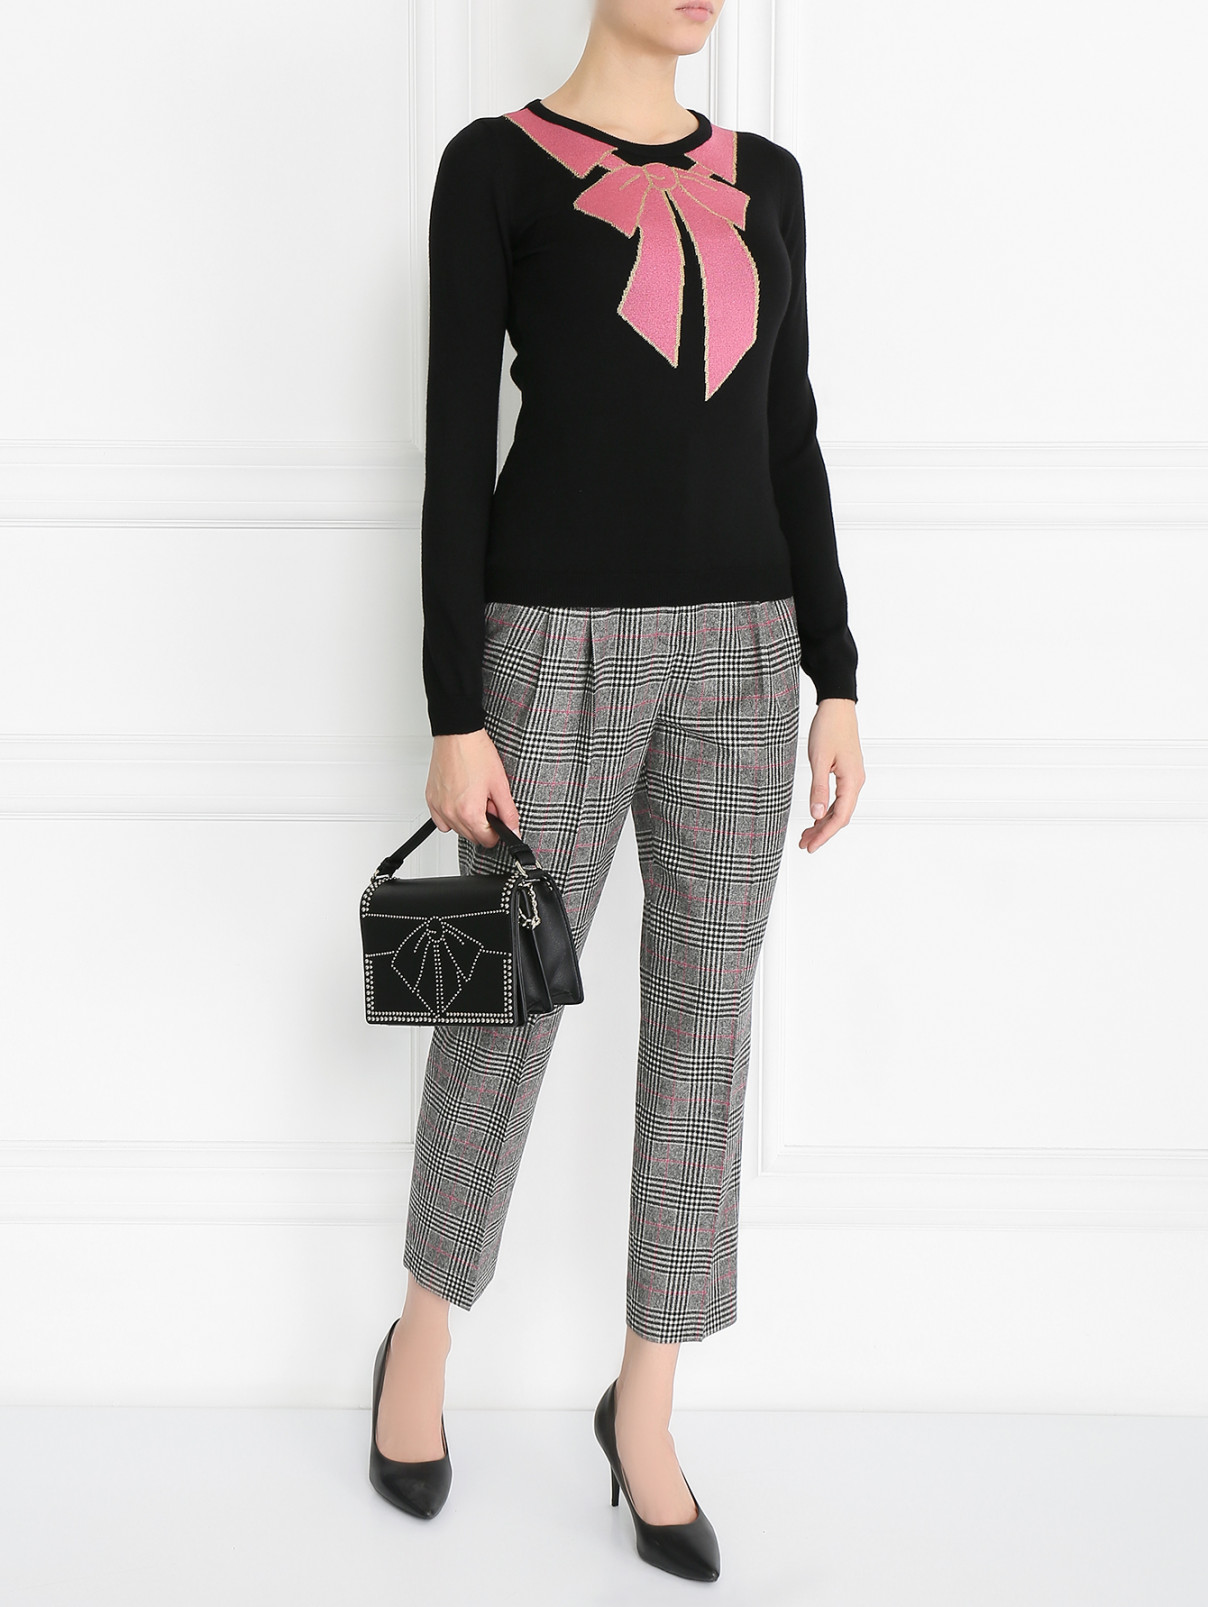 Джемпер из шерсти с узором Moschino Boutique  –  Модель Общий вид  – Цвет:  Черный